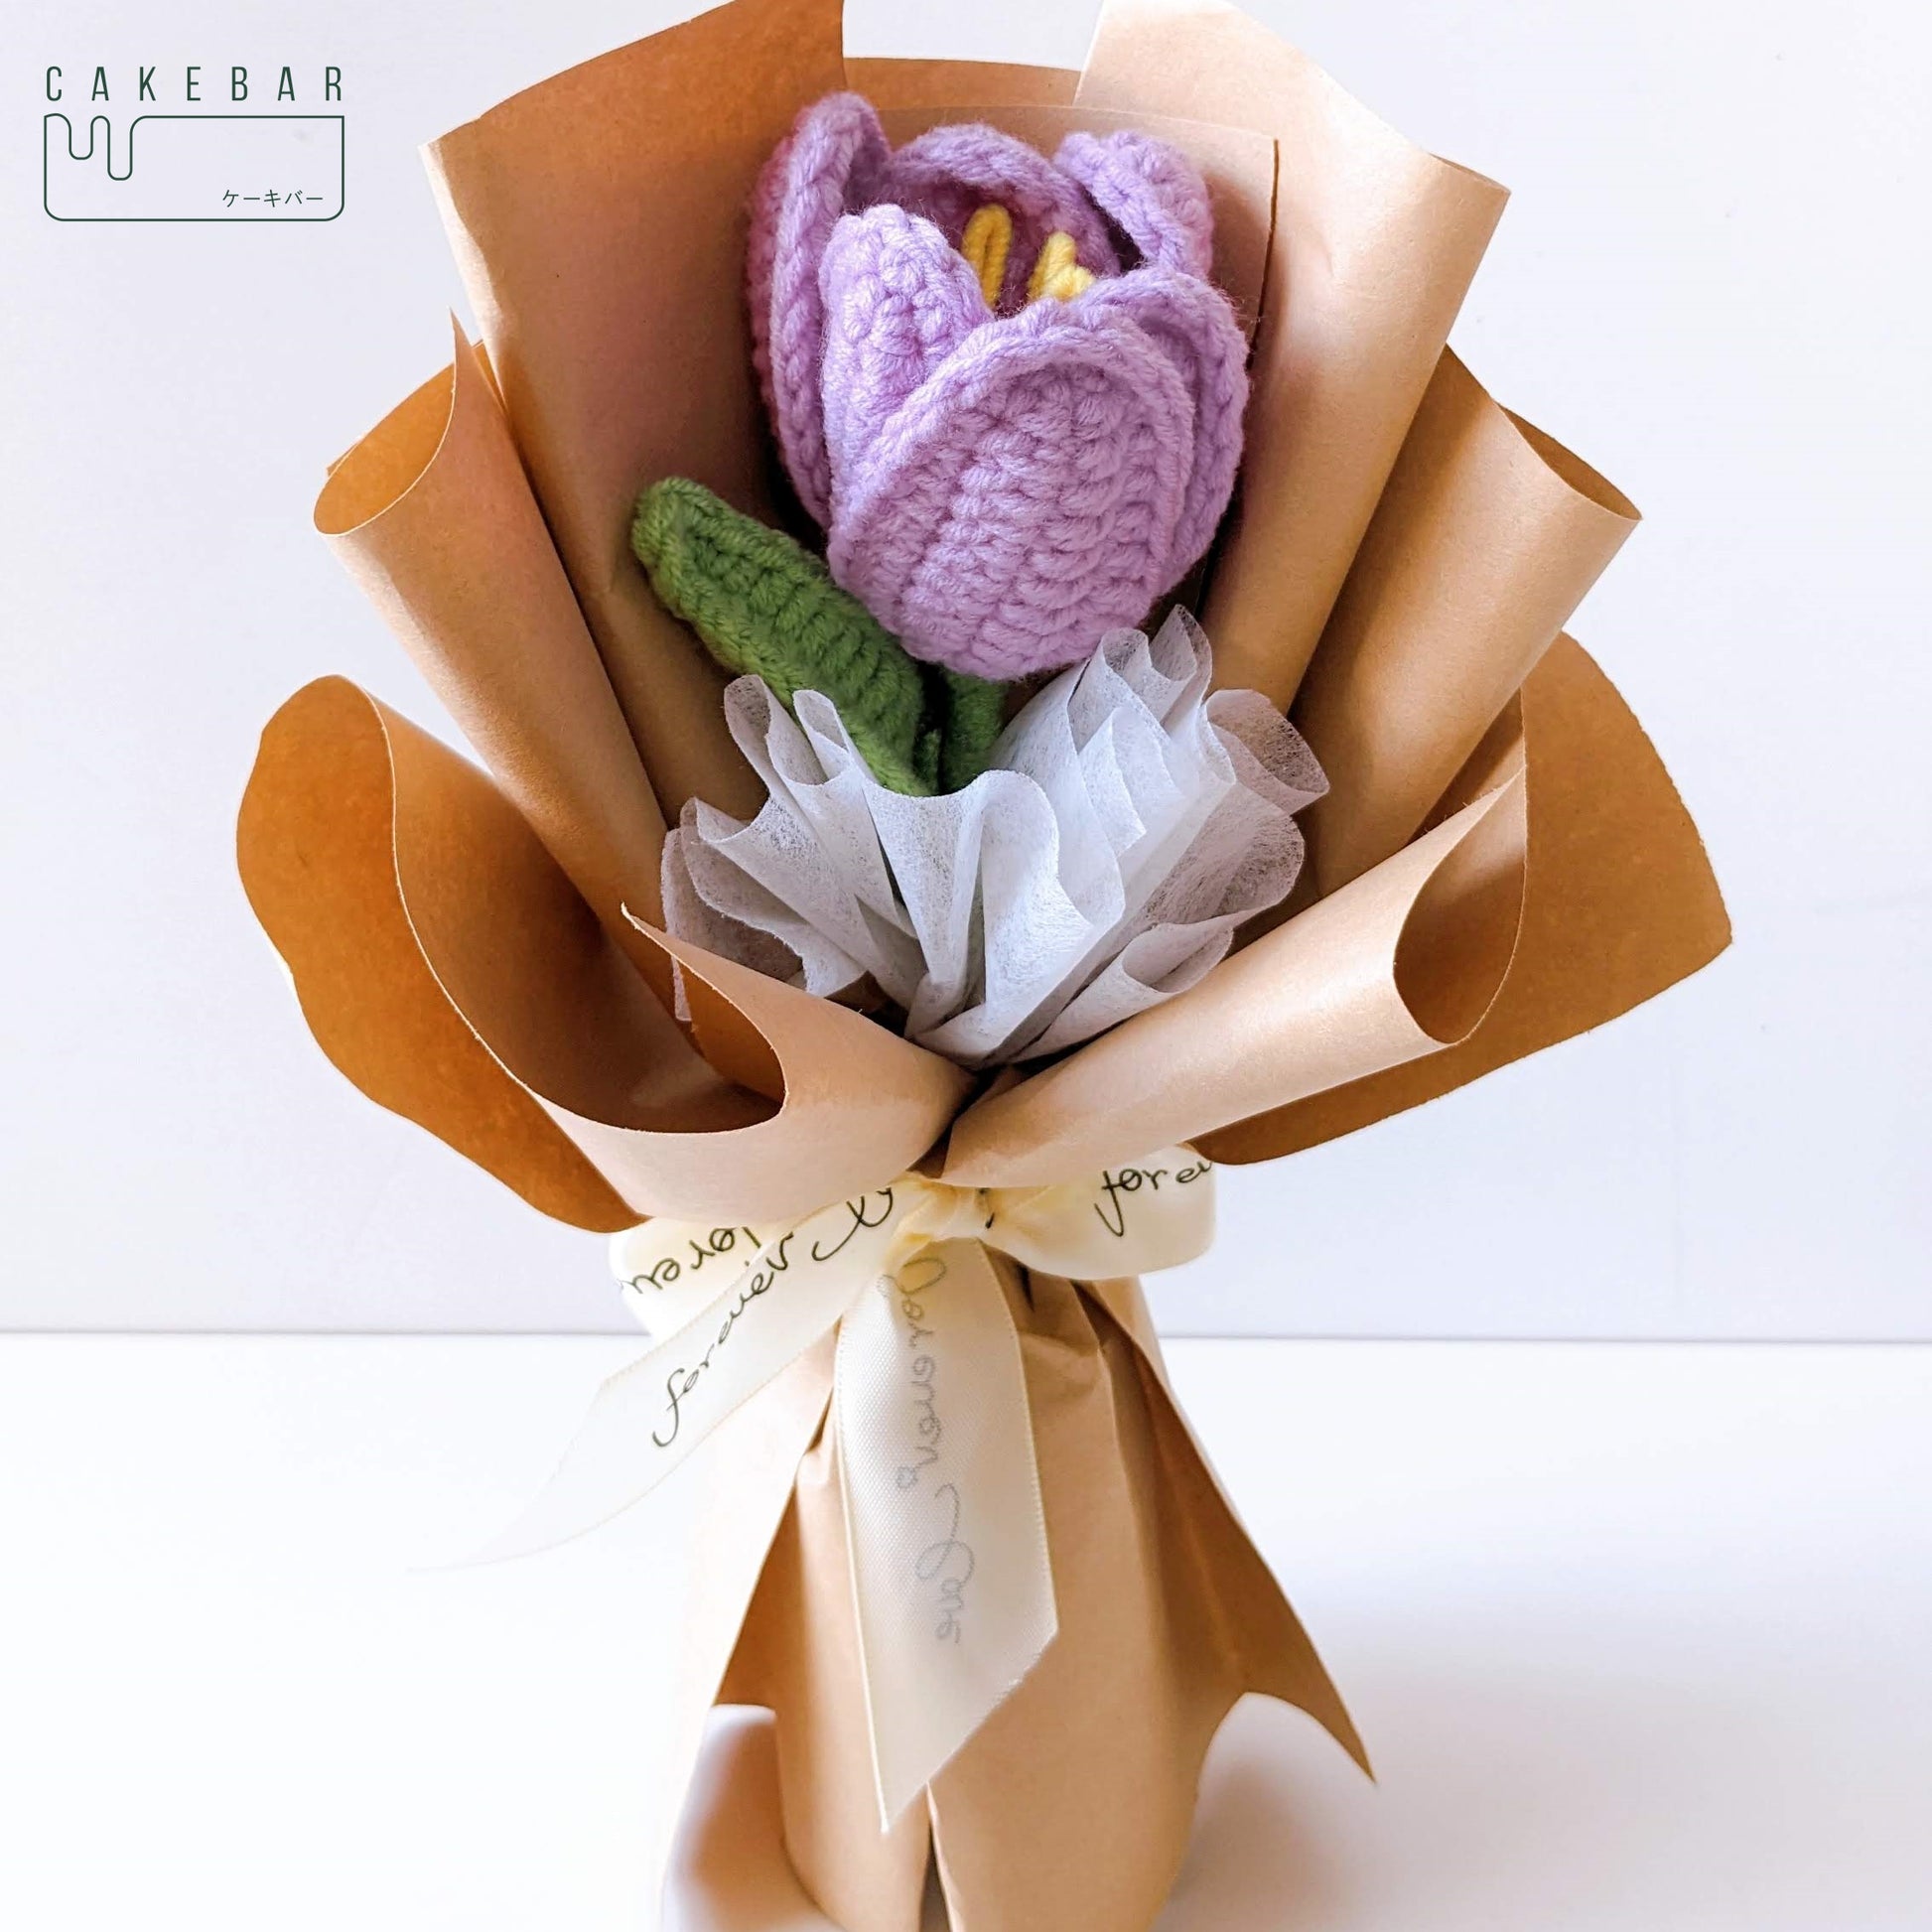 Shop Crochet Tulips Bouquet